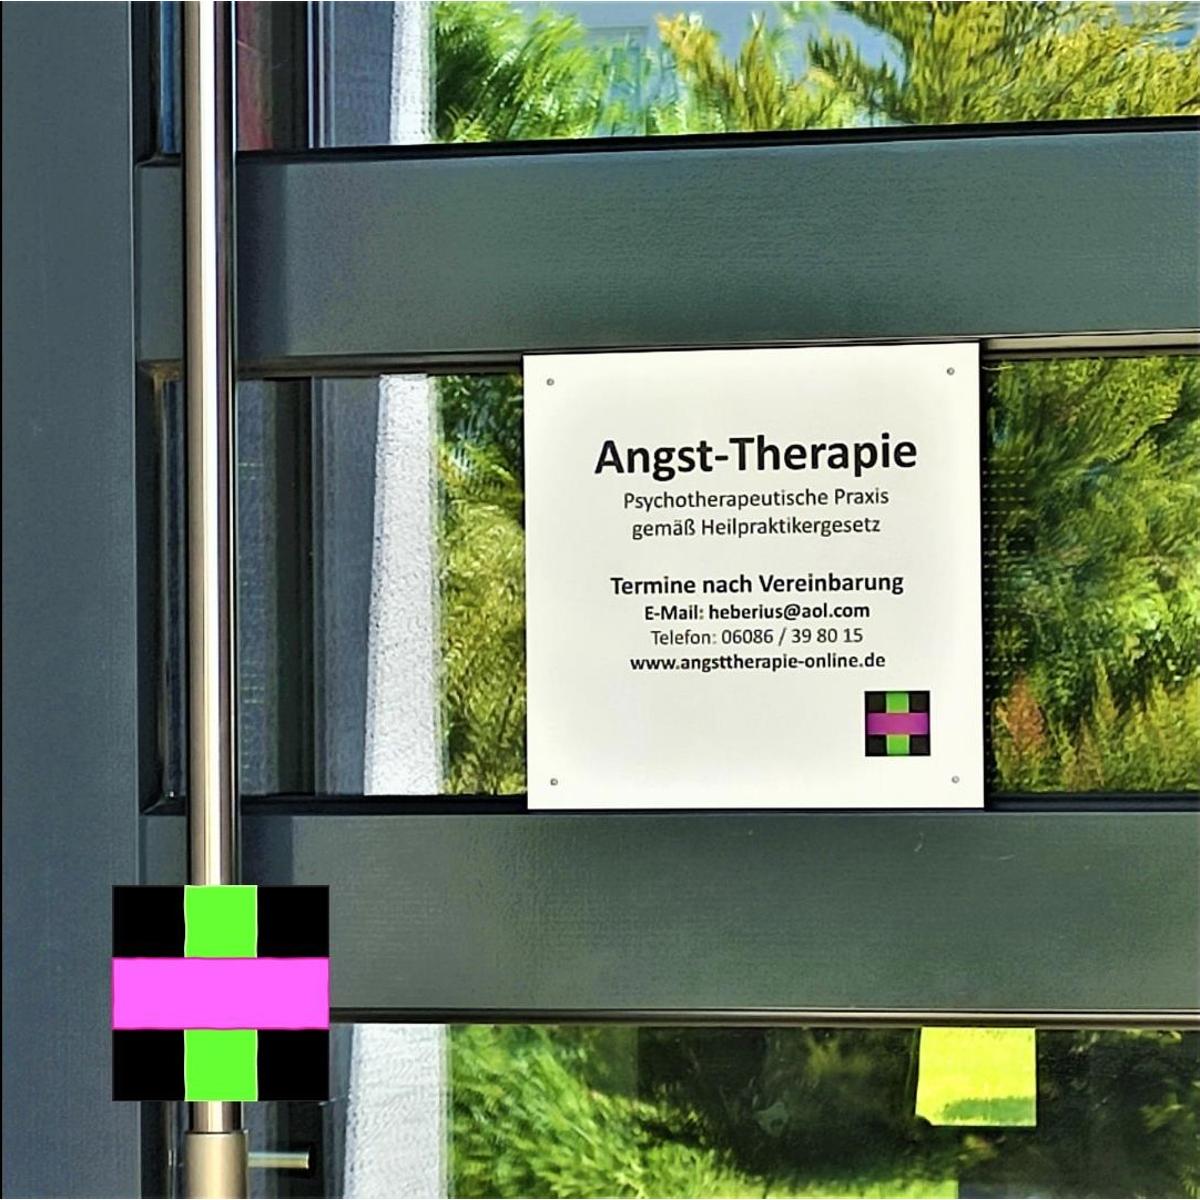 Bild 1 Angst-Therapie, Psychotherapeutische Praxis nach dem Heilpraktikergesetz in Grävenwiesbach